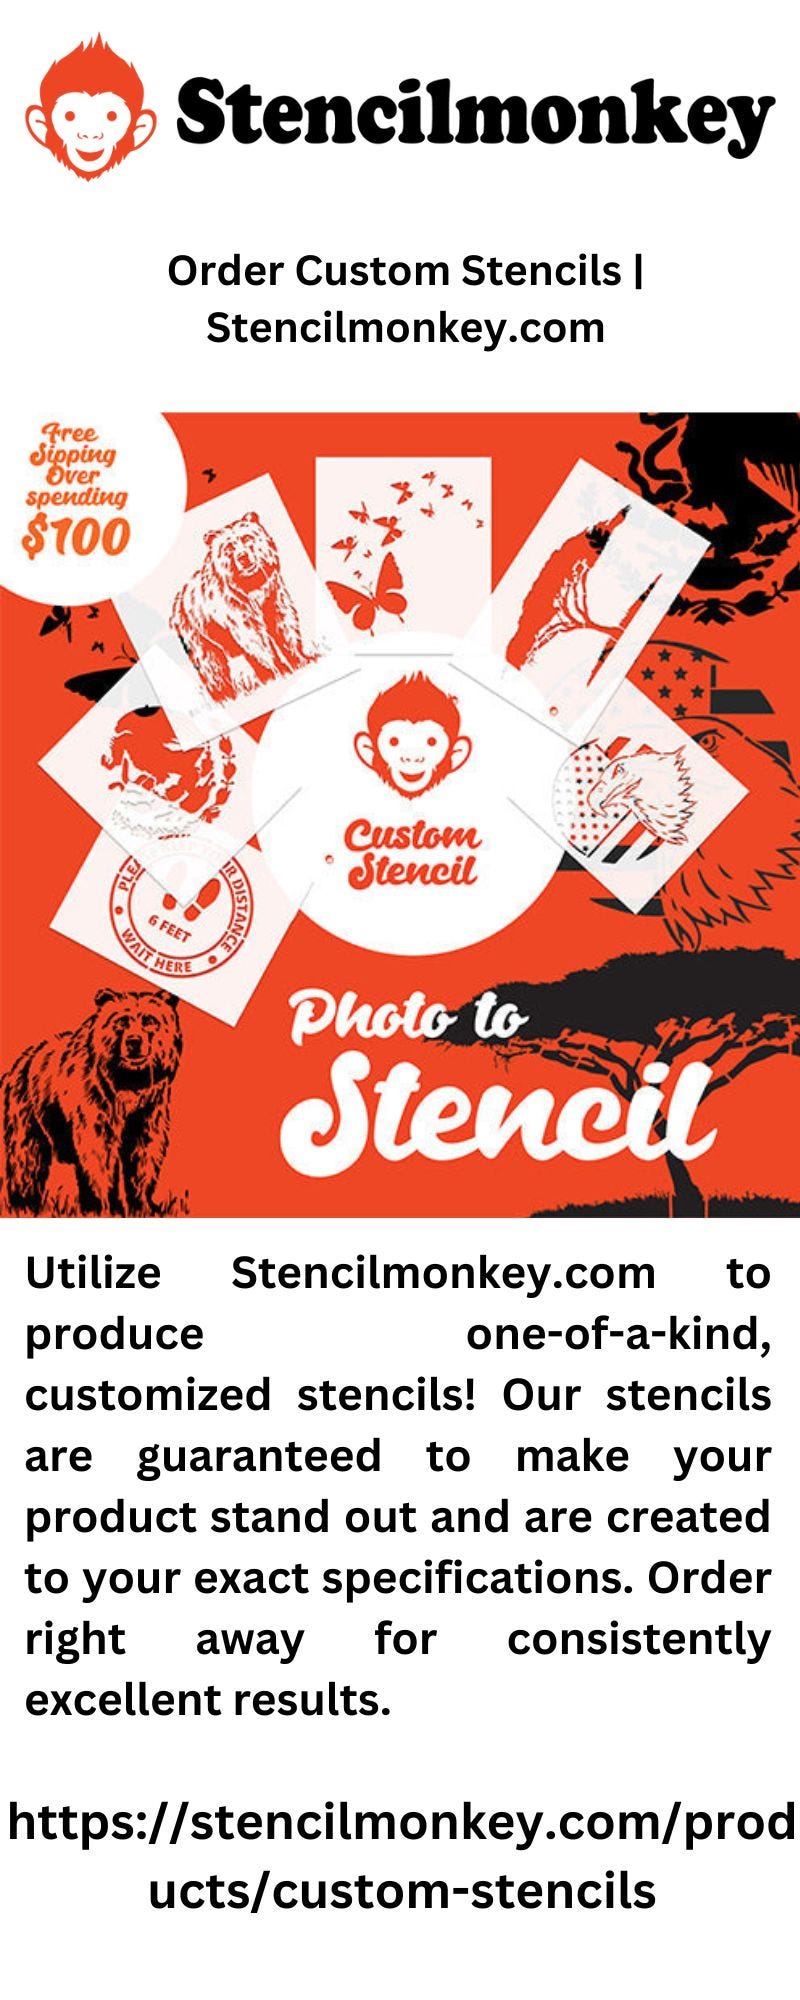 Coffee Stencils Design  Stencilmonkey.com - stencilmonkey - Medium